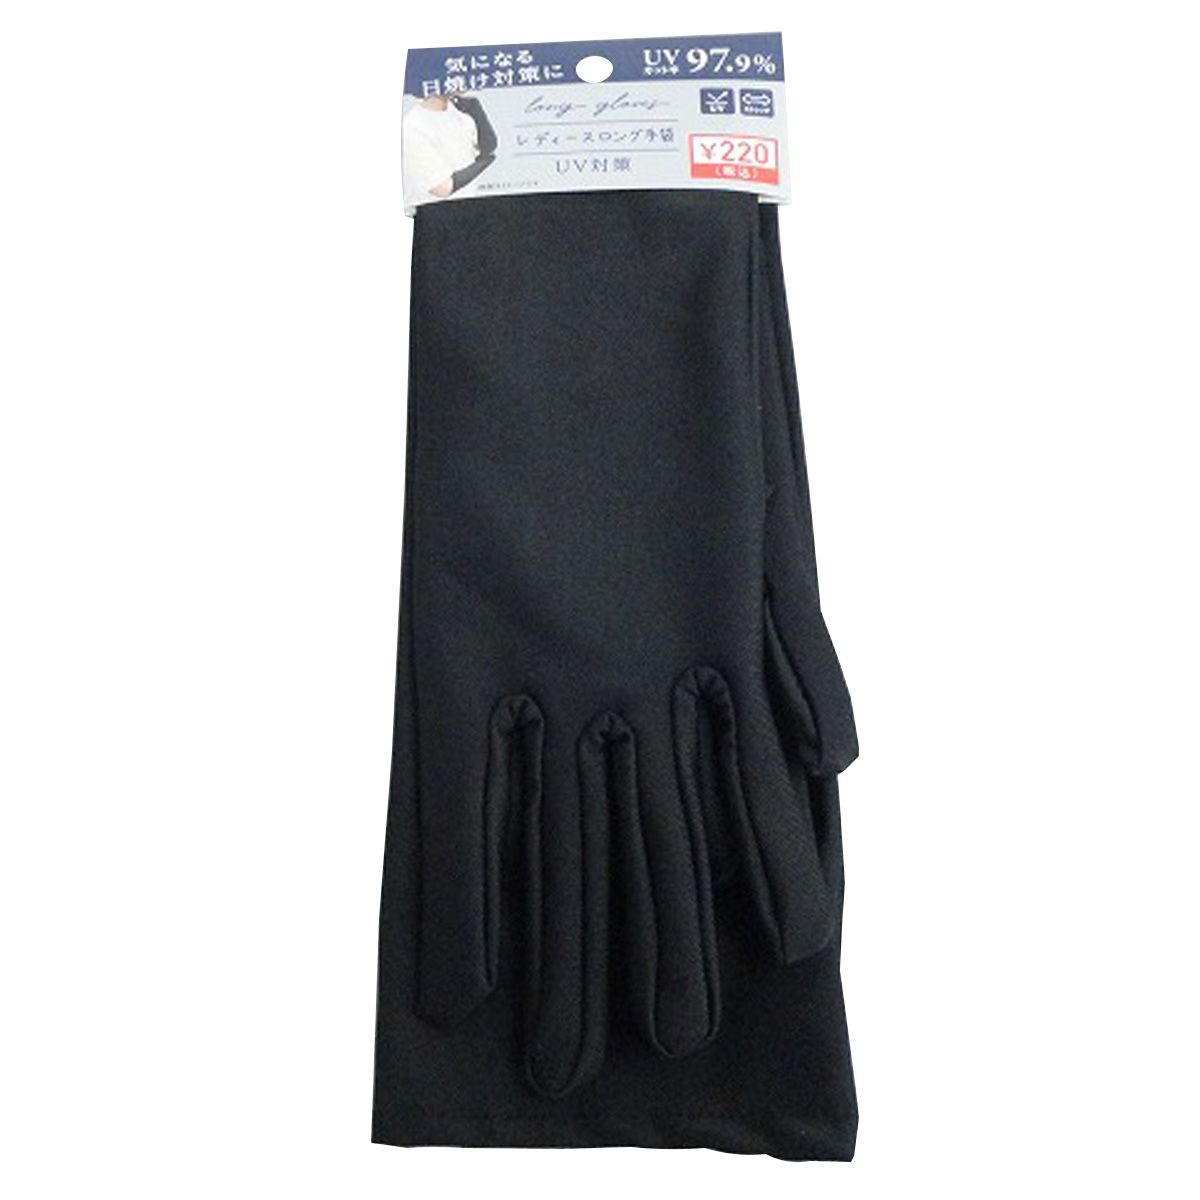 【OUTLET】UVカットグローブ UVカットレディースロング手袋 365505